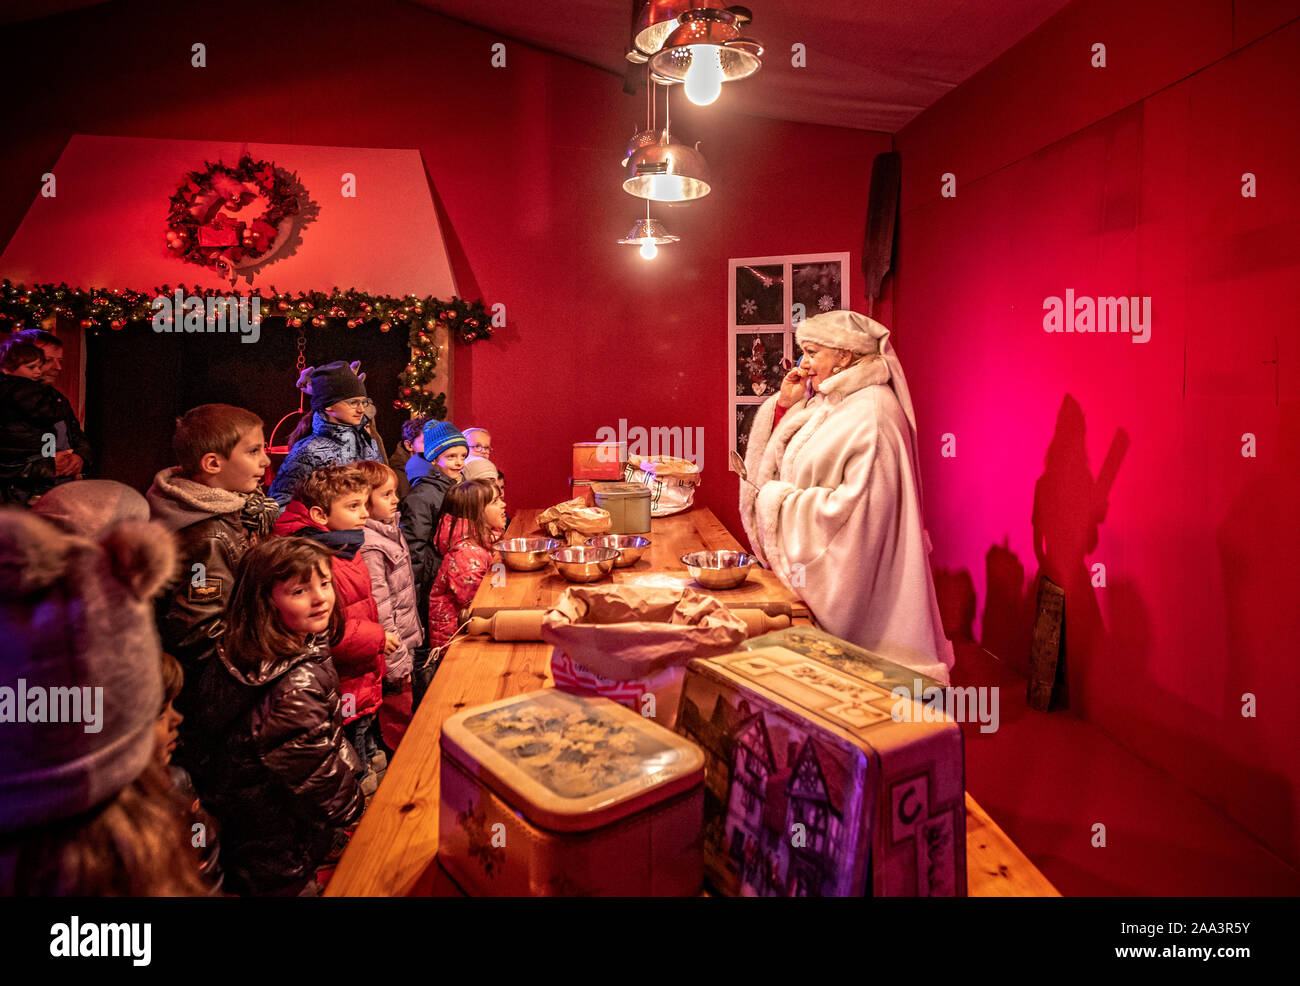 Italien Piemont Langhe Govone Il Magico Paese Di Natale" (Das magische Land von Weihnachten) - Performances und Installationen in der Heimat von Santa Claus - Frau Santa Claus Zimmer Stockfoto